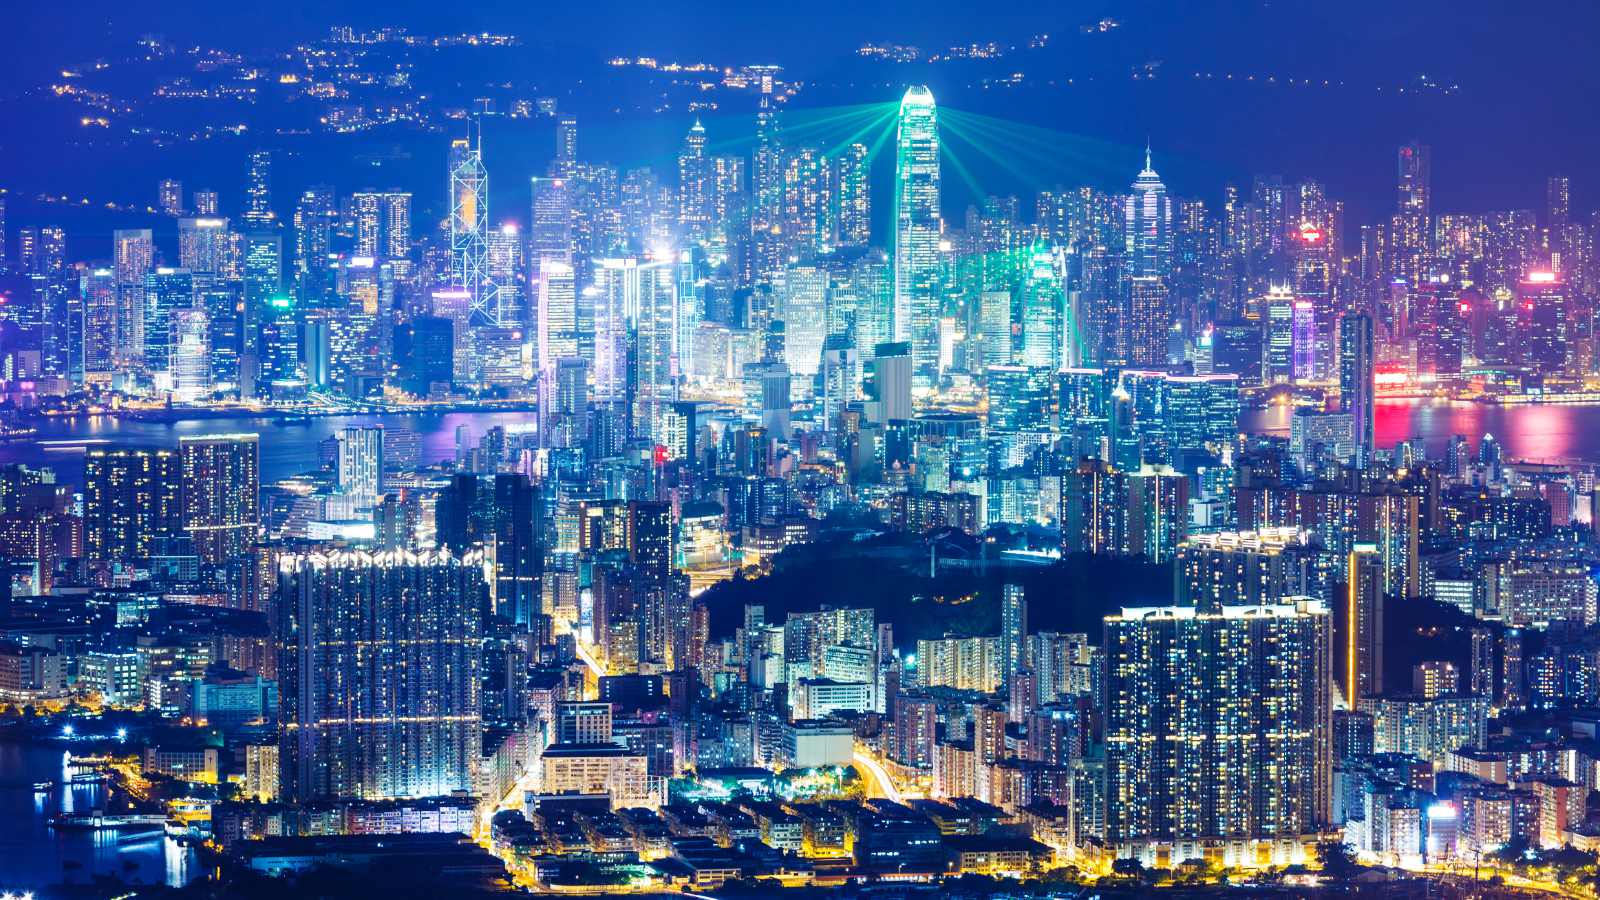 Hong Kong Cyberpunk